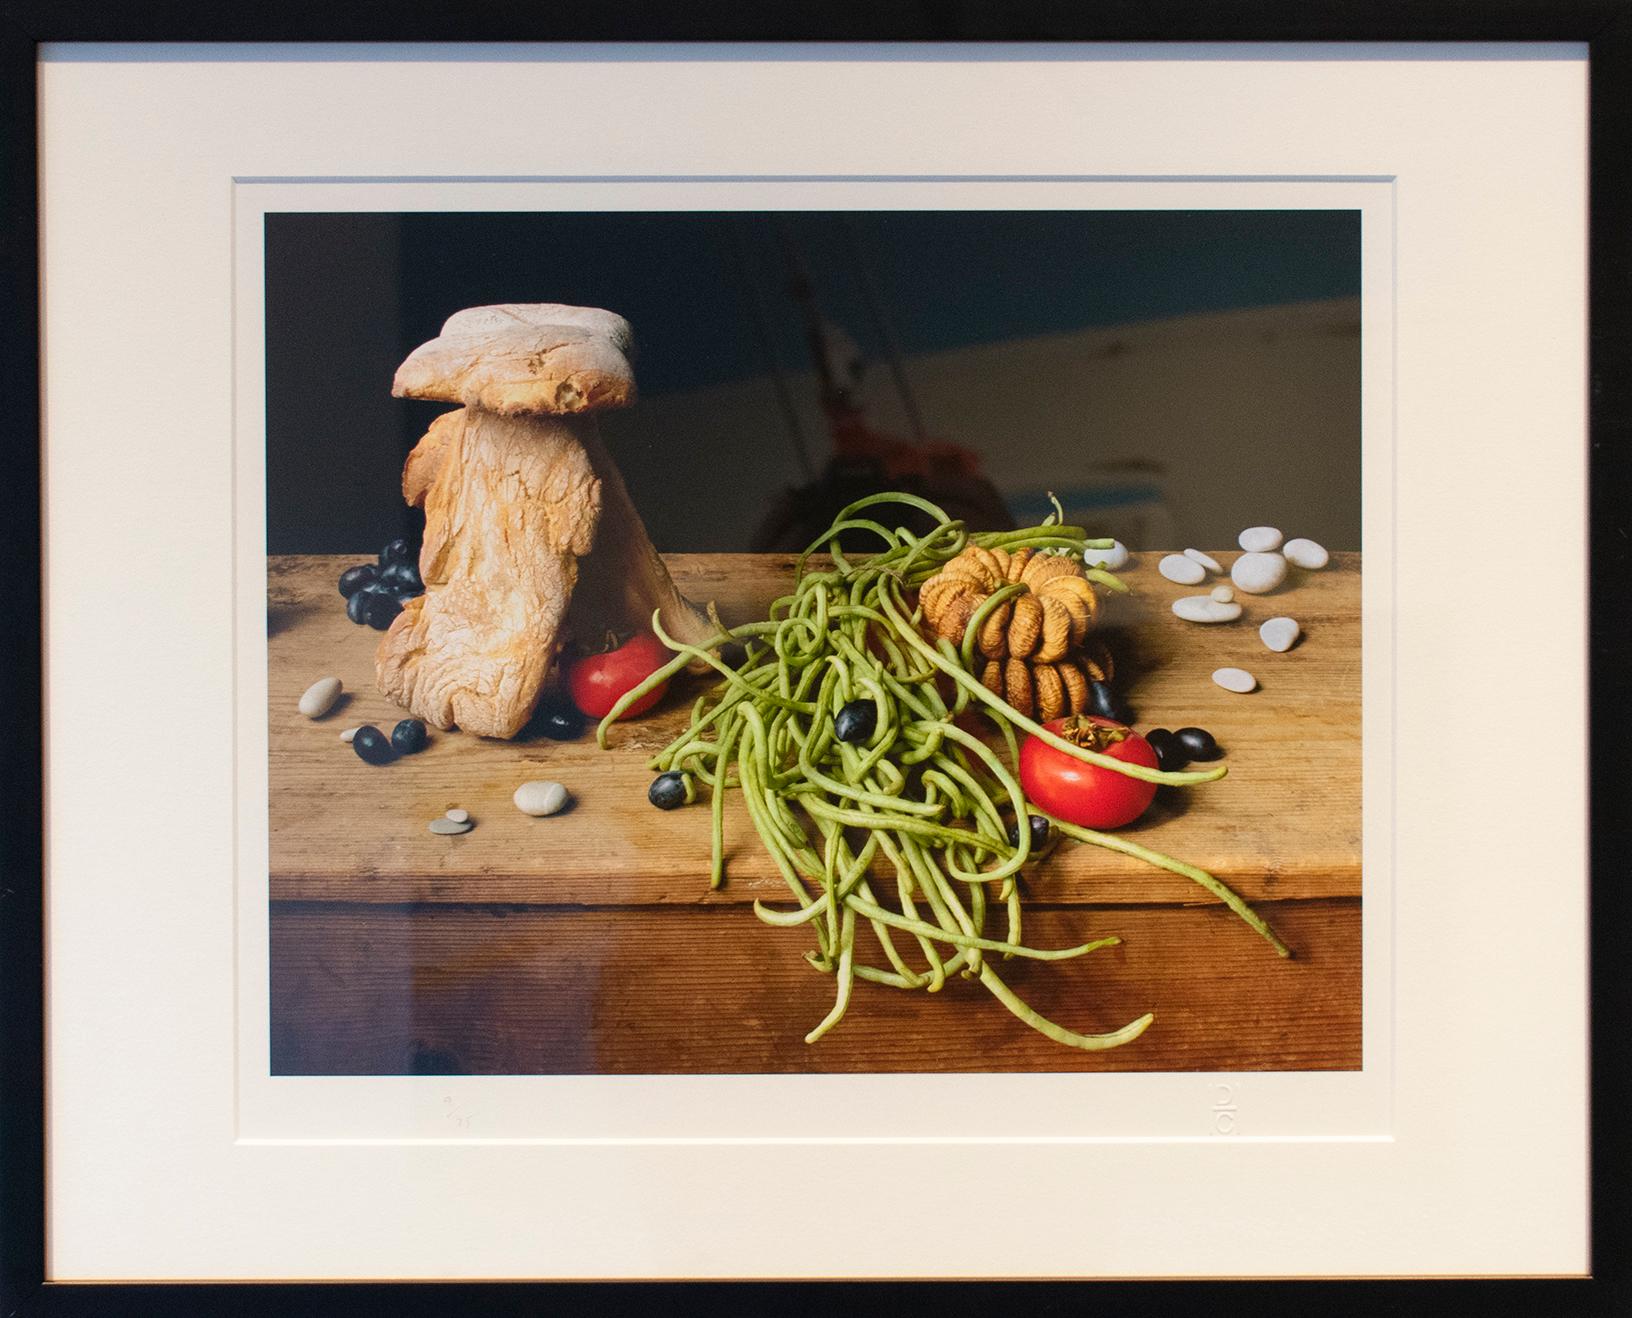 Bread House (Framed Food Stillleben Fotografie von Brot, Gemüse und Steinen)  – Photograph von David Halliday